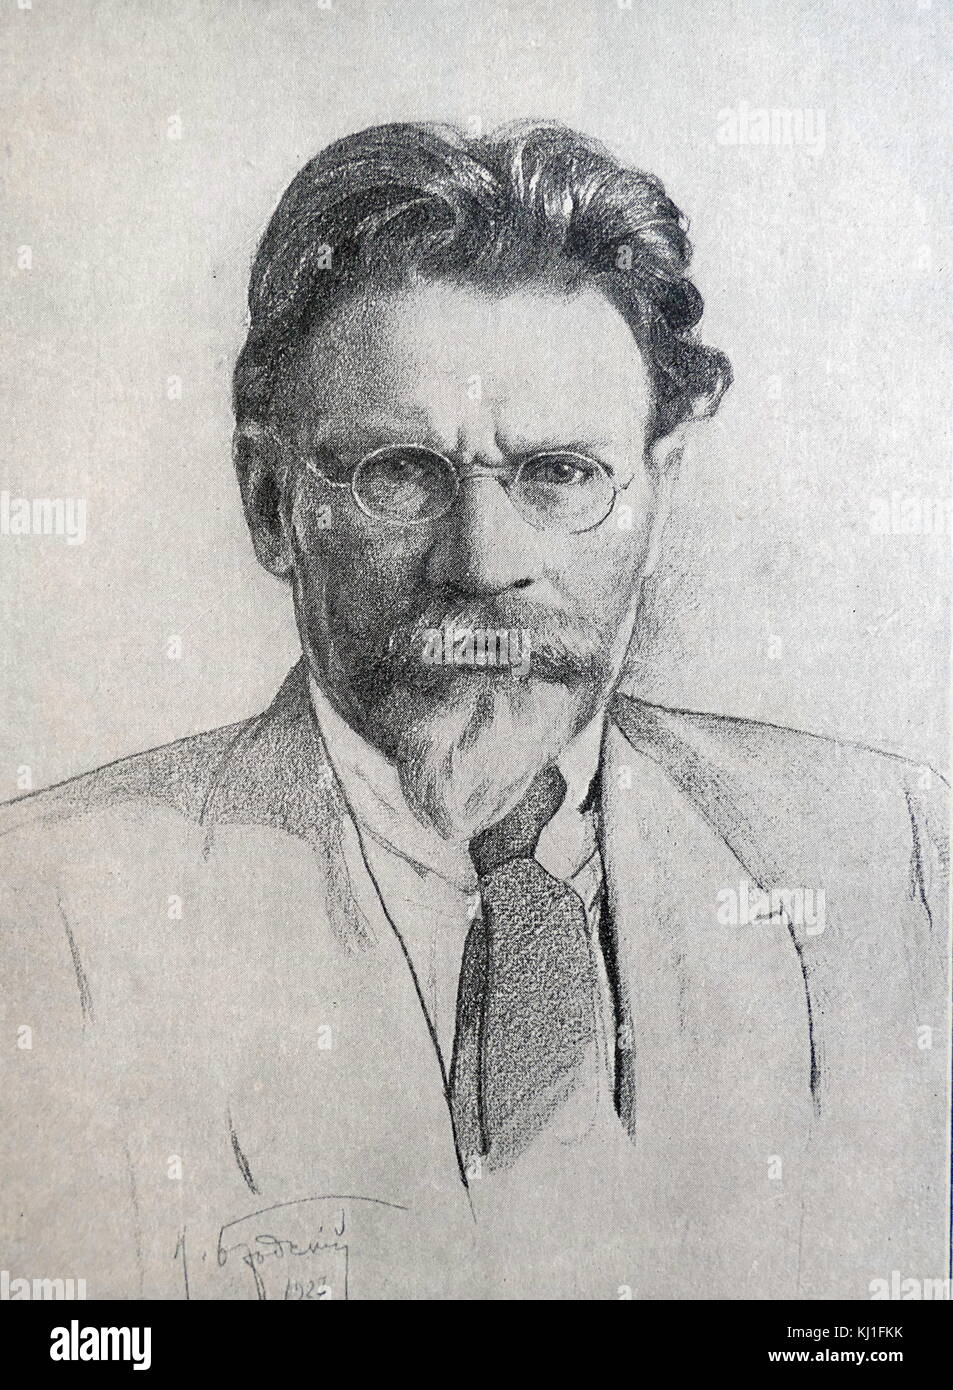 Mikhail Ivanovich Kalinin (1875 - 1946), bolscevico e rivoluzionario marxista-leninista funzionario. Ha servito come capo di stato del russo federativa sovietica Repubblica socialista e successivamente dell'Unione Sovietica da 1919 a 1946. Dal 1926, egli è stato un membro del Politburo del Partito Comunista dell'Unione Sovietica. Foto Stock